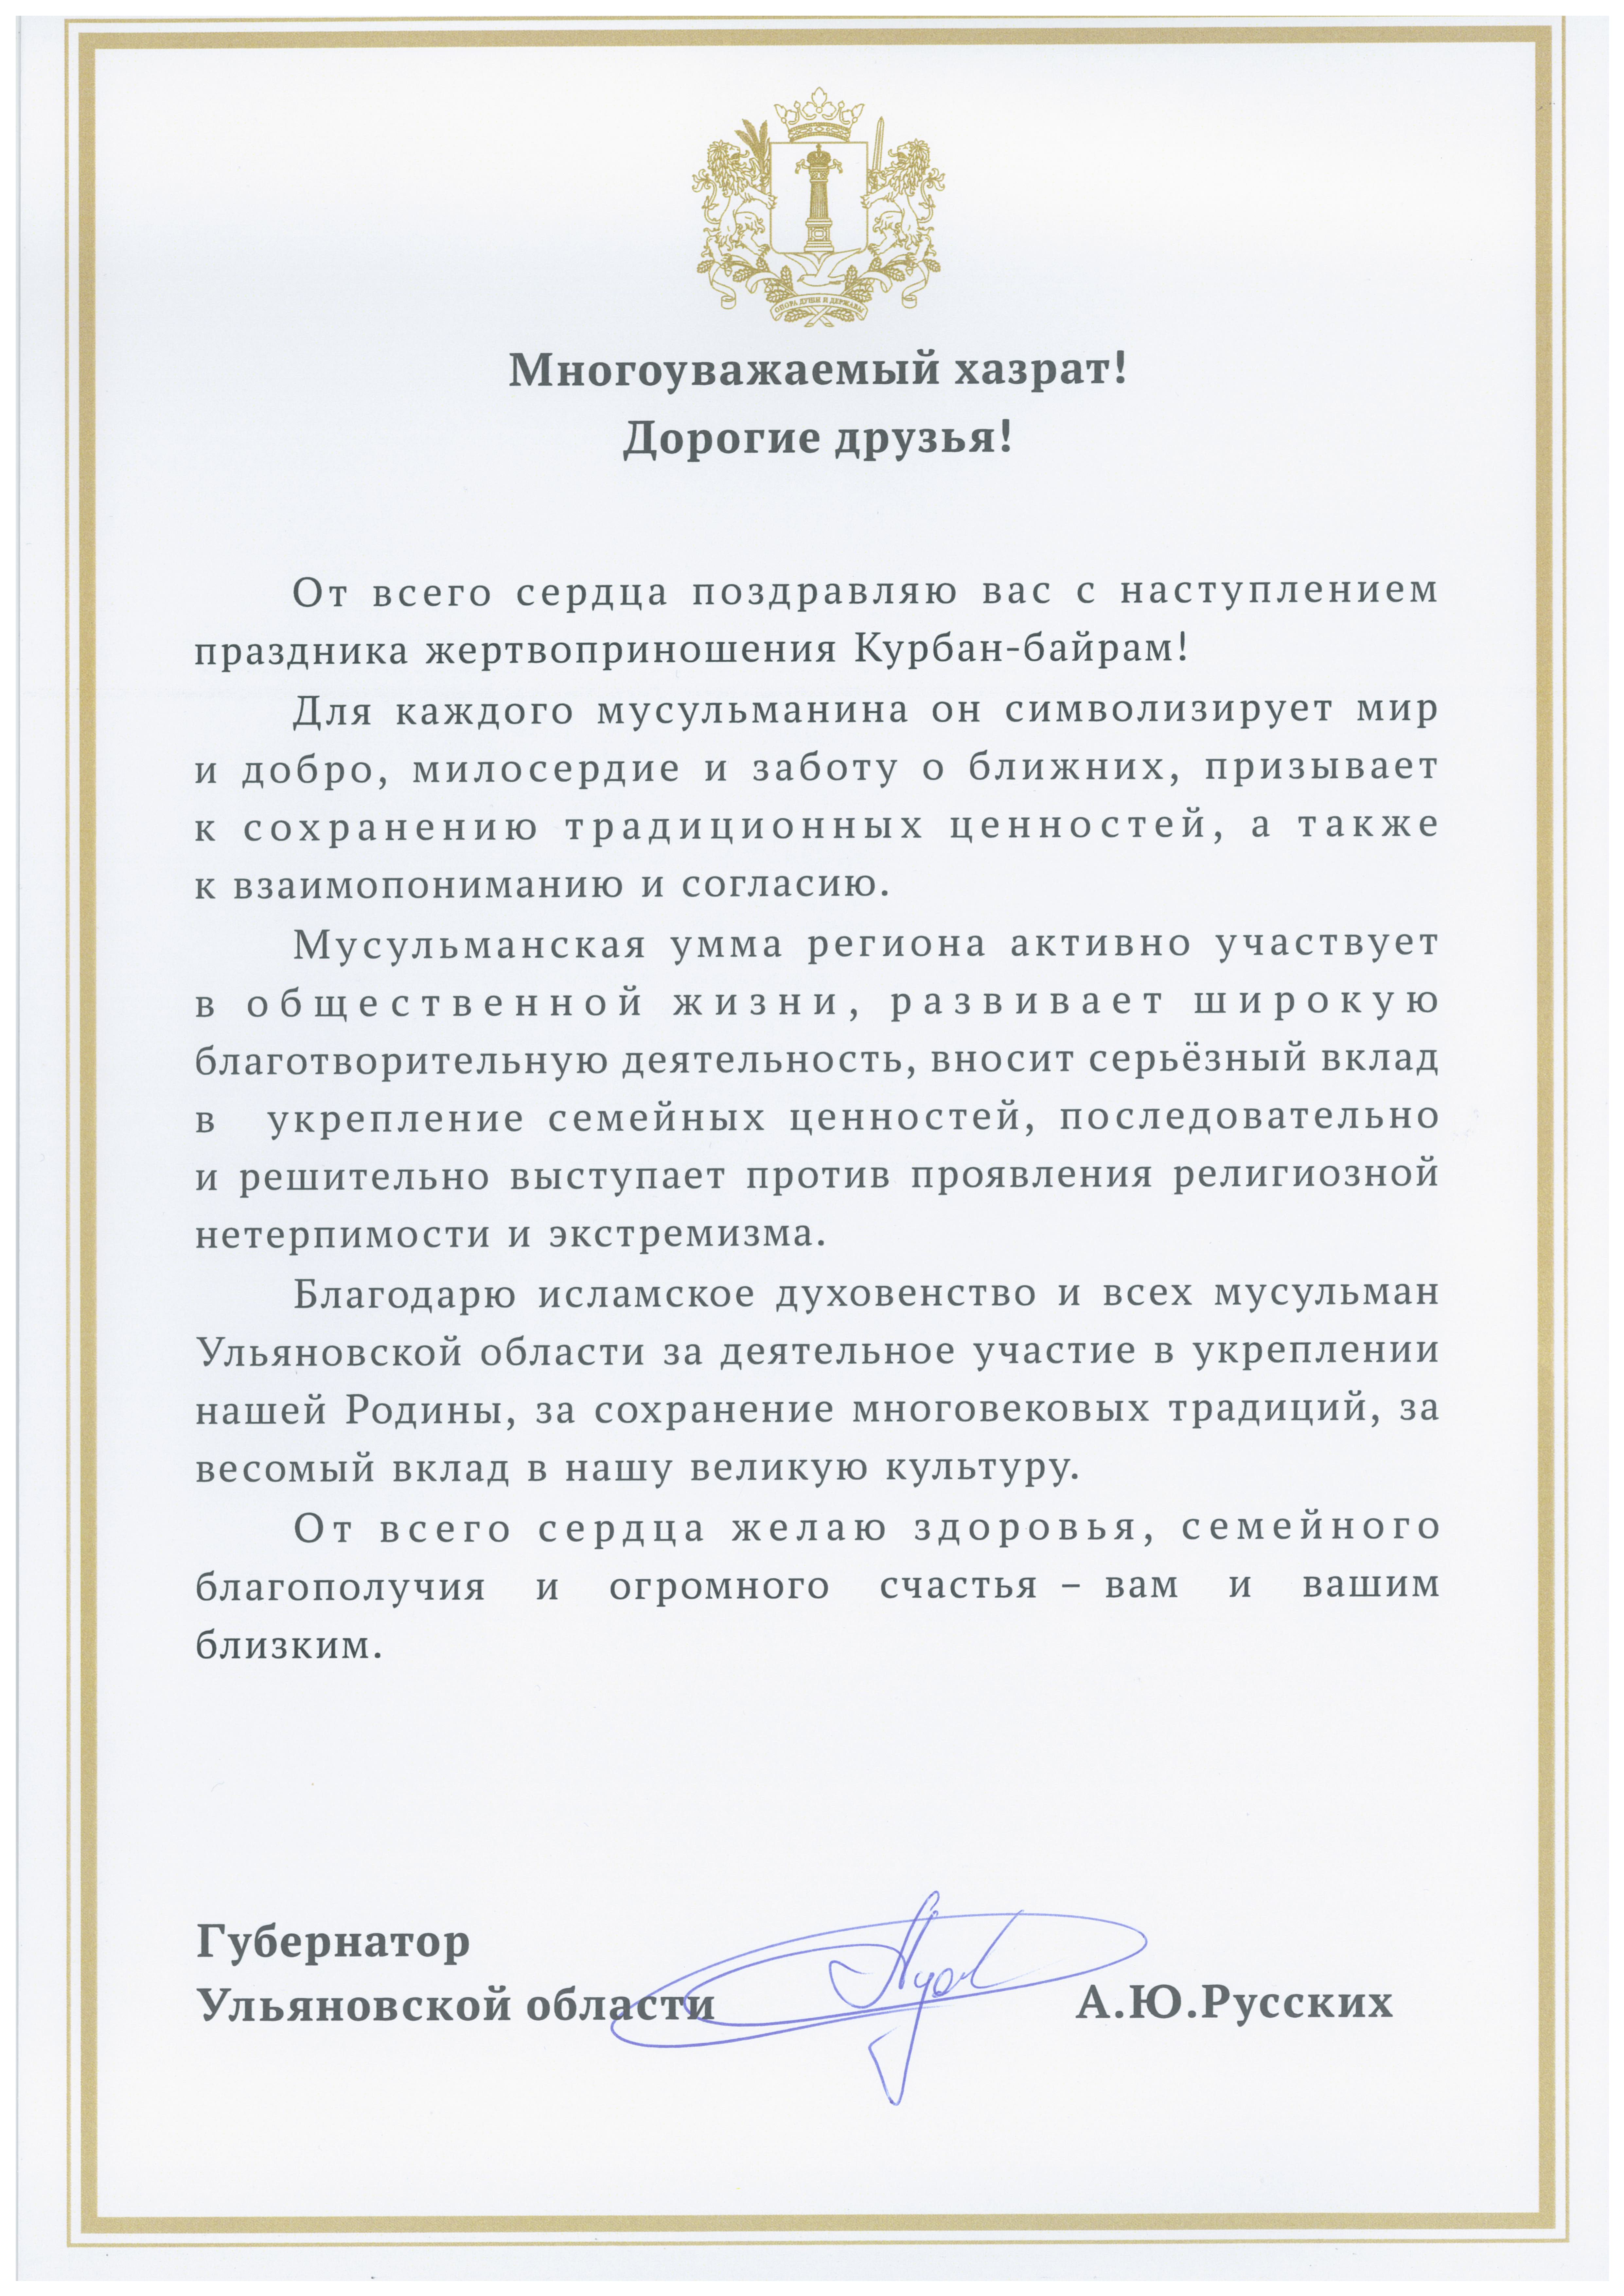 Поздравление Губернатора Ульяновской области Алексея Русских с праздником жертвоприношения Курбан-байрам всех мусульман.